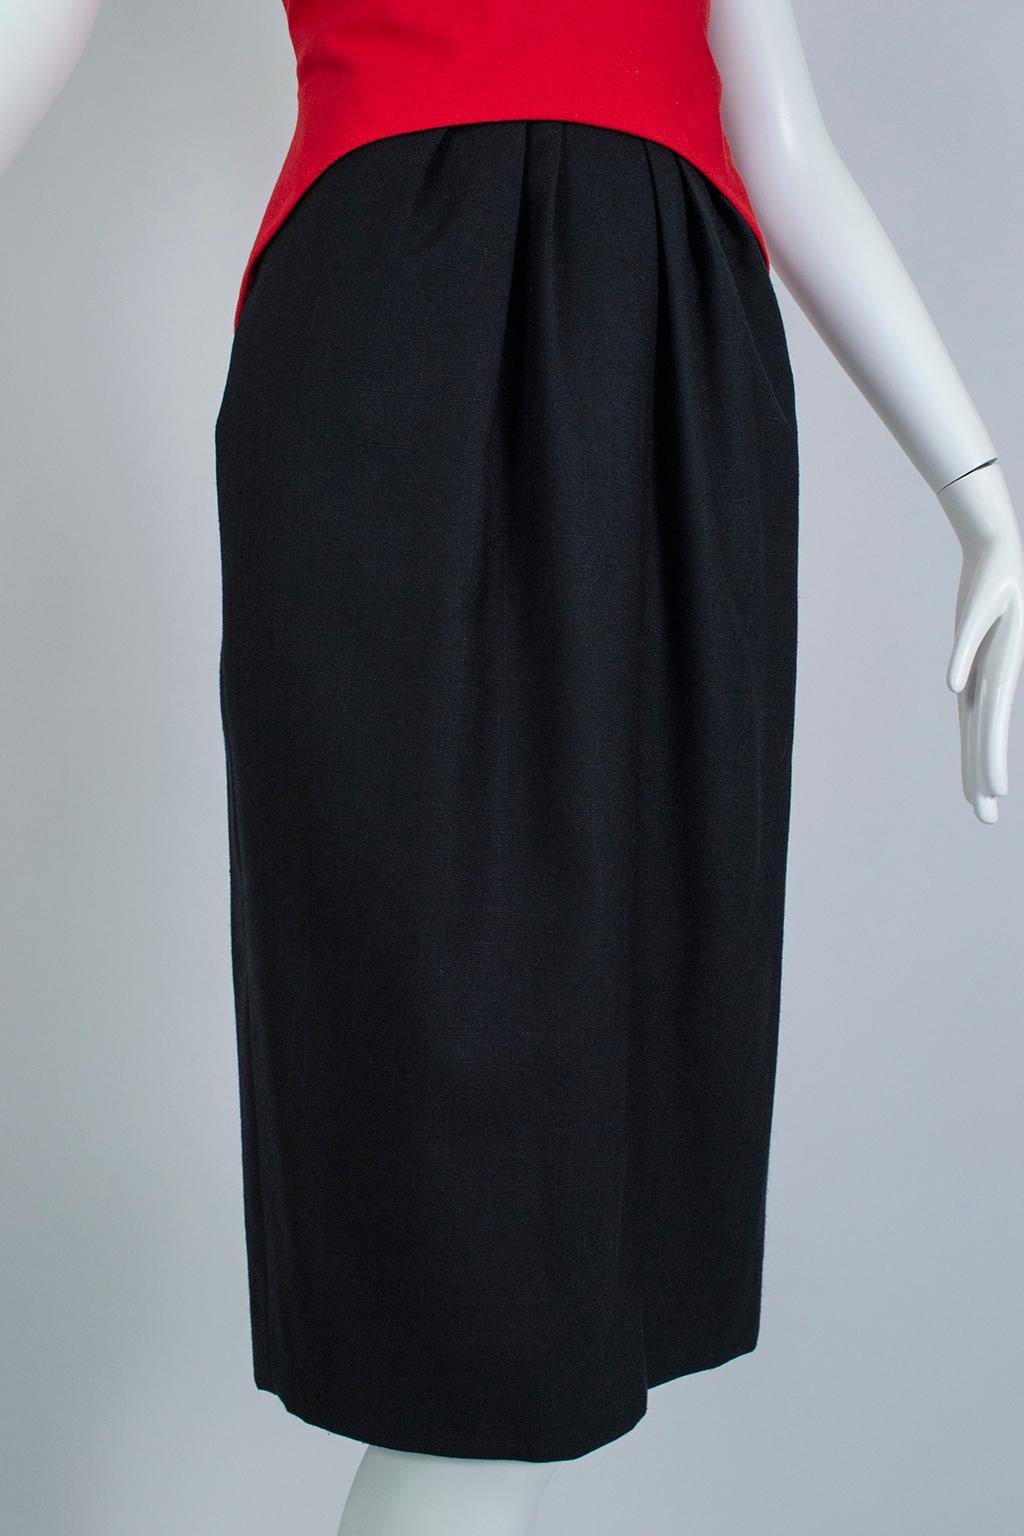 Luis Estévez Red, Black and White Waist-Cincher Peplum Sheath Dress - M-L, 1950s For Sale 4